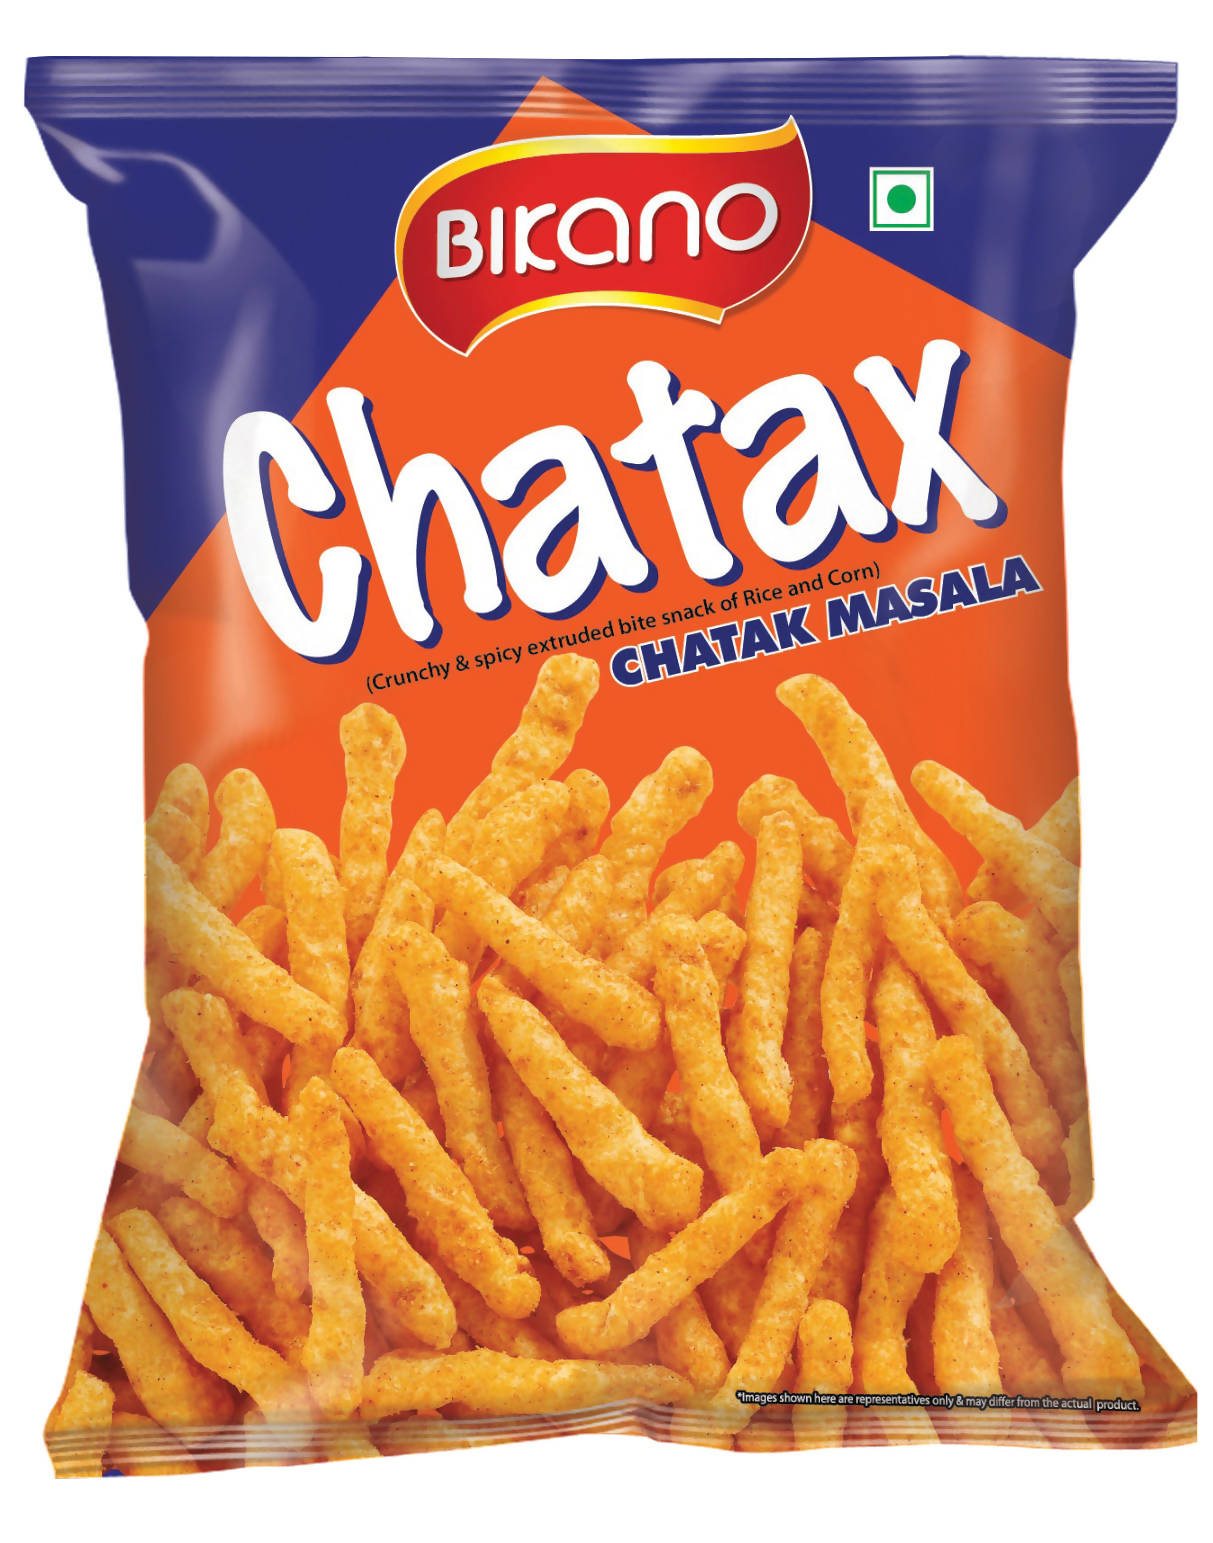 Bikano Chatax-Chatak Masala